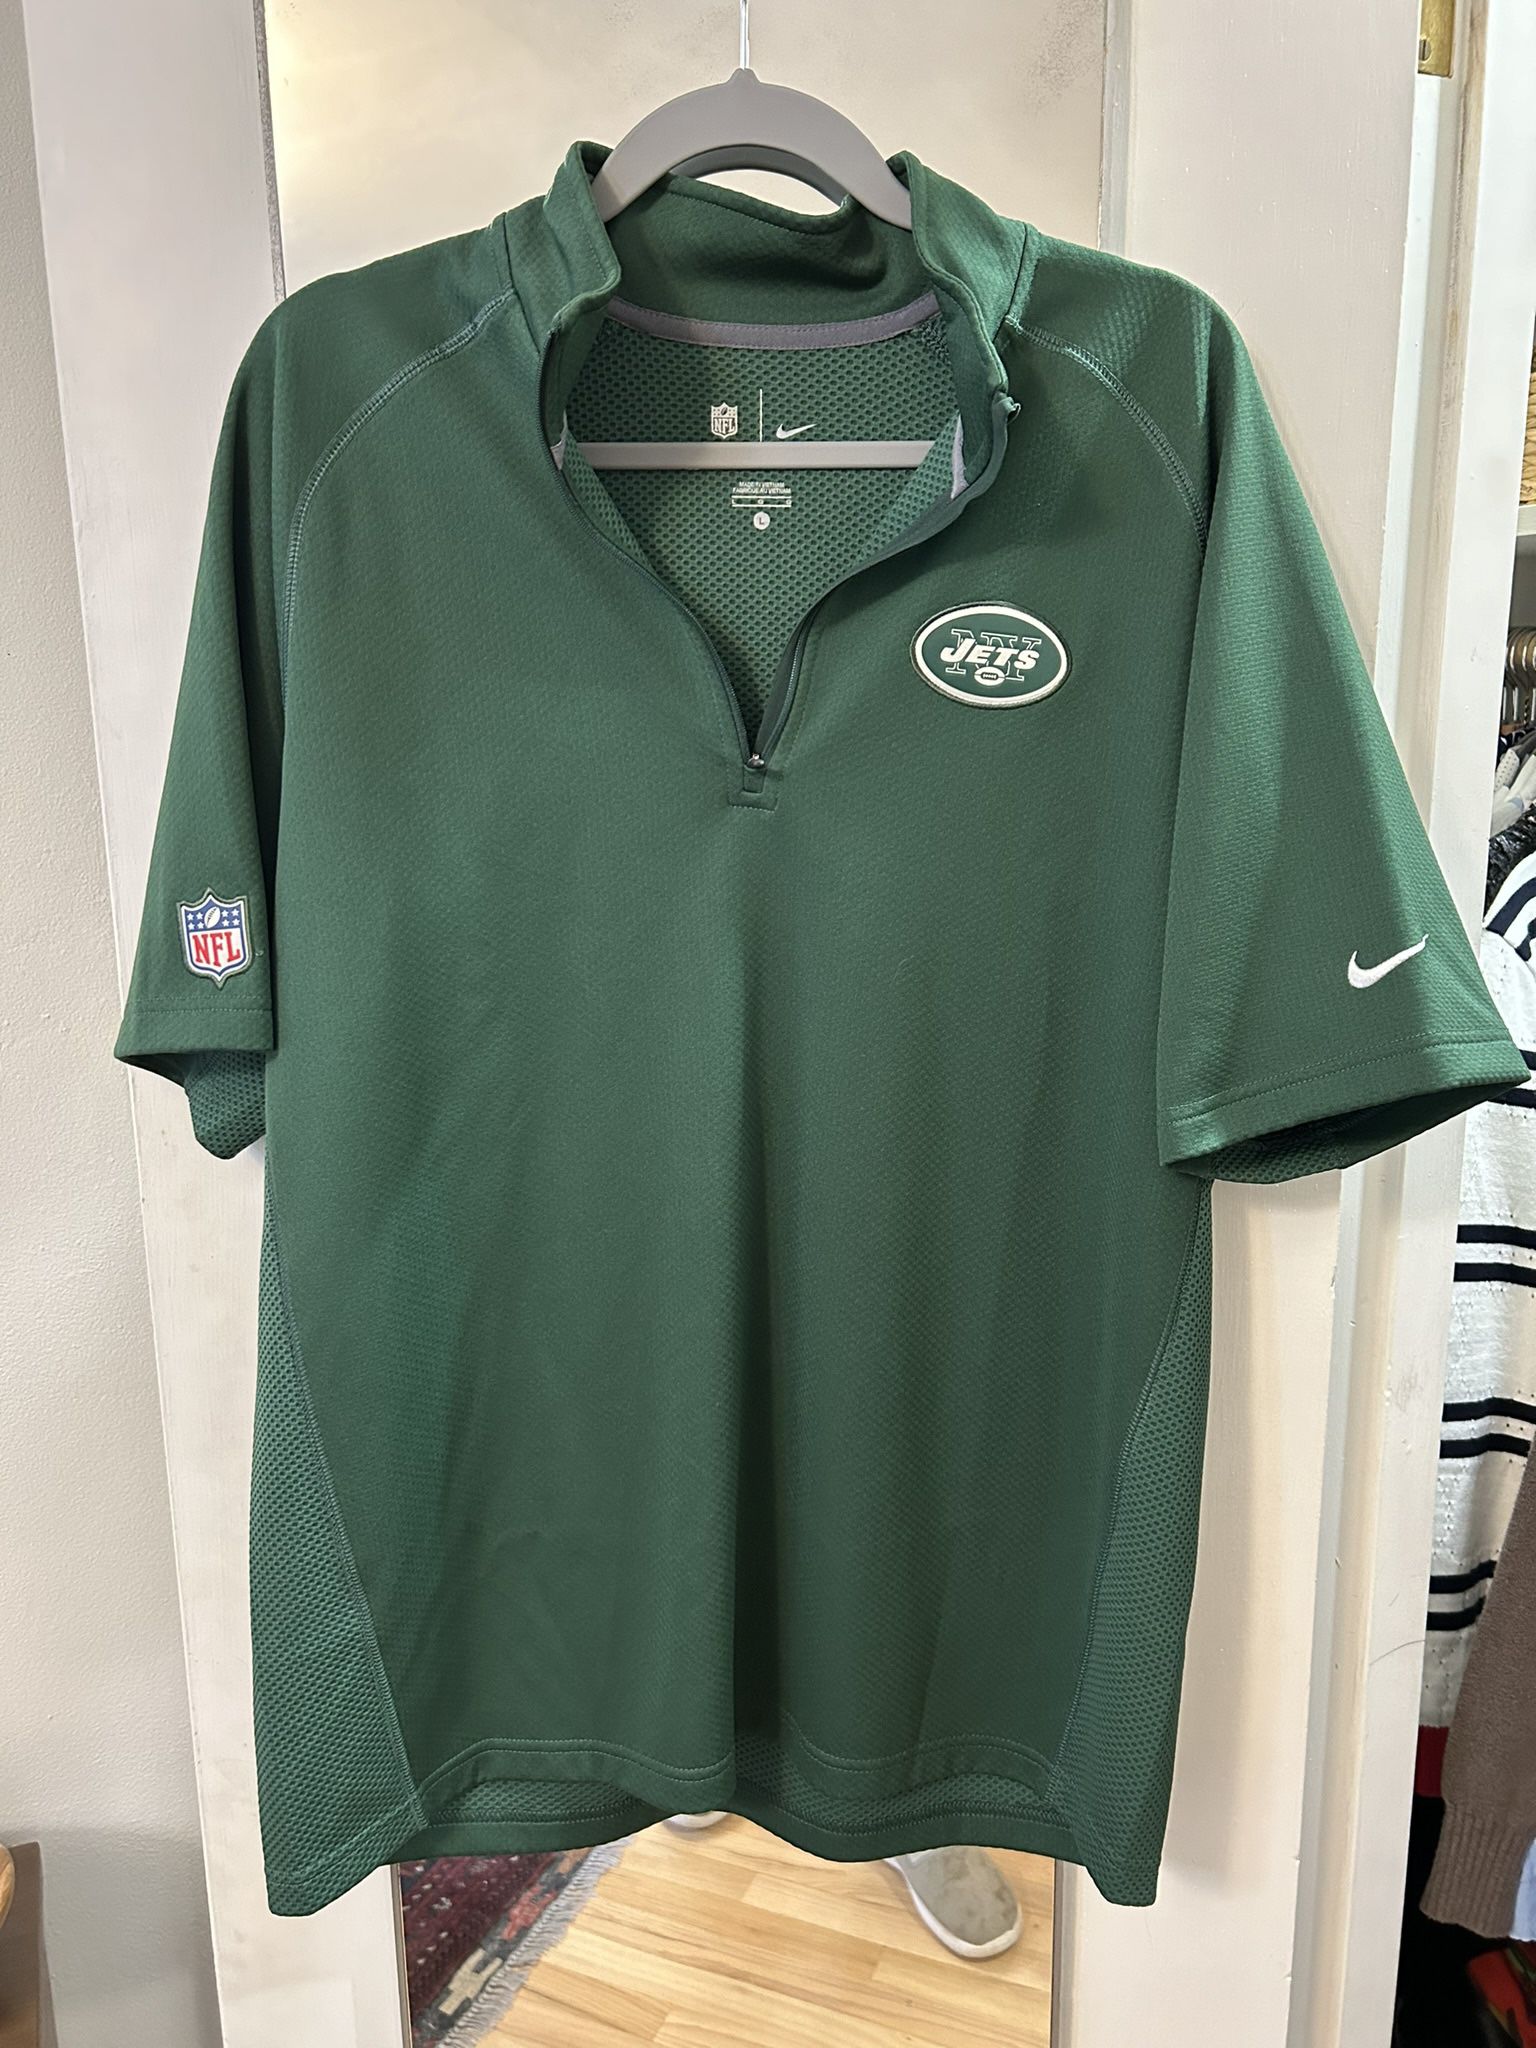 Green Zip-placket Shirt - NY Jets